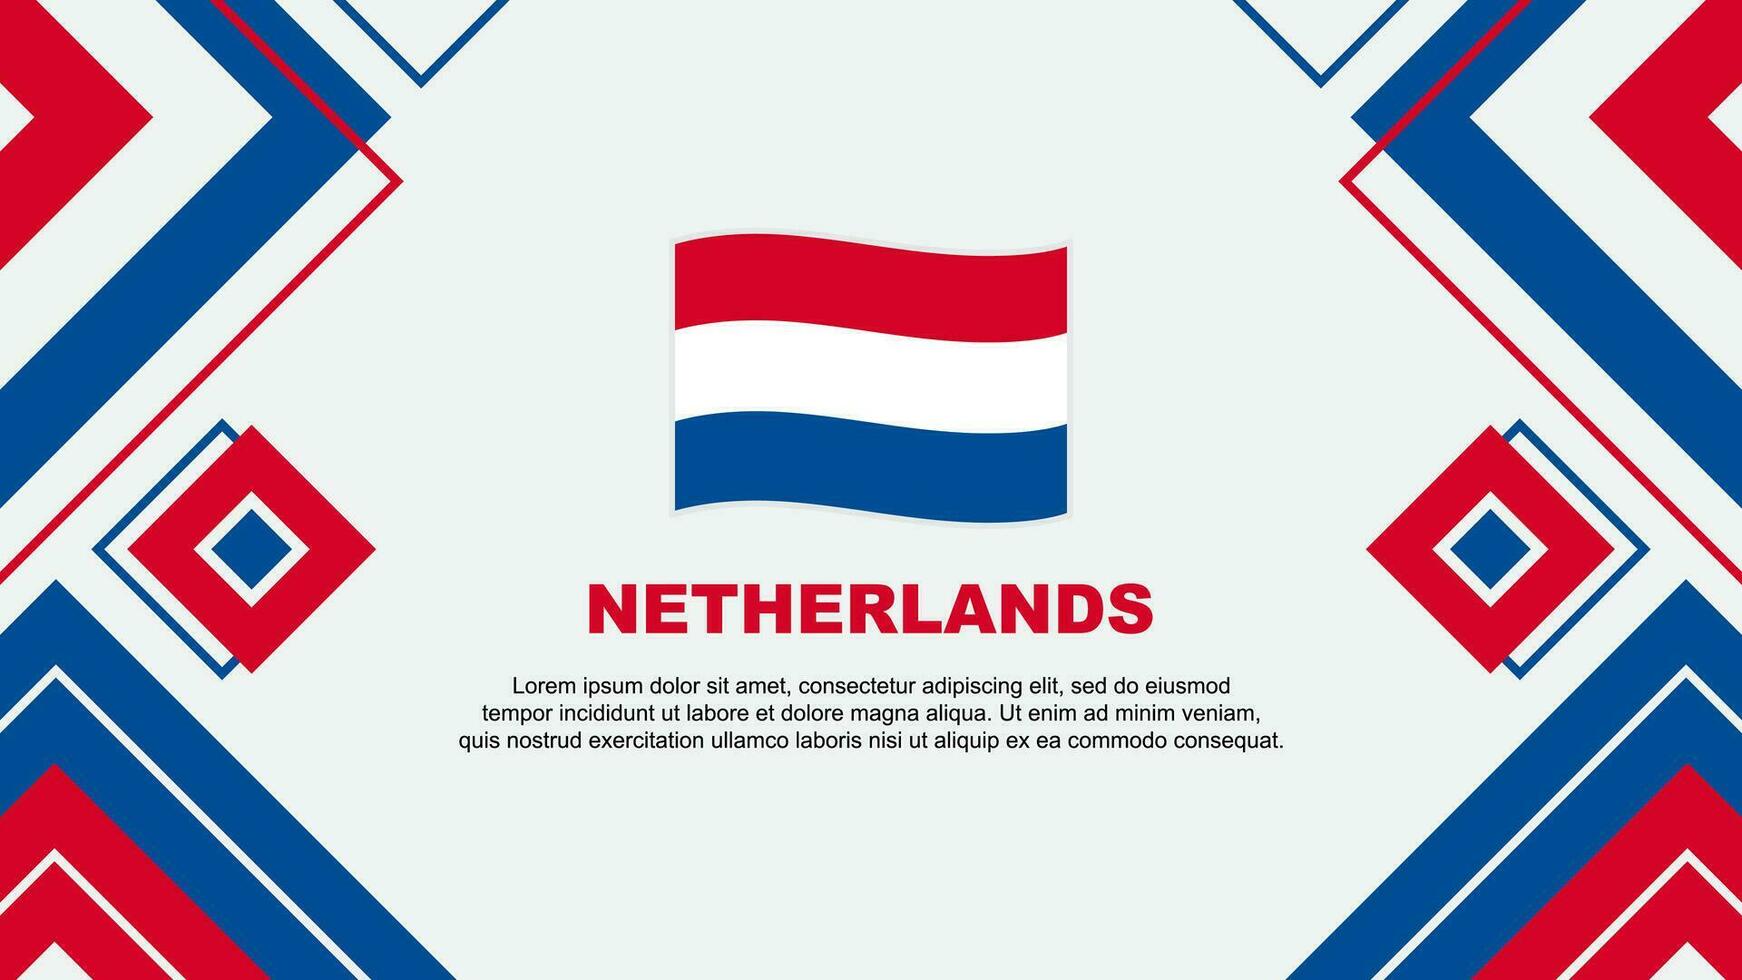 Netherlands Flag Abstract Background Design Template. Netherlands Independence Day Banner Wallpaper Vector Illustration. Netherlands Background